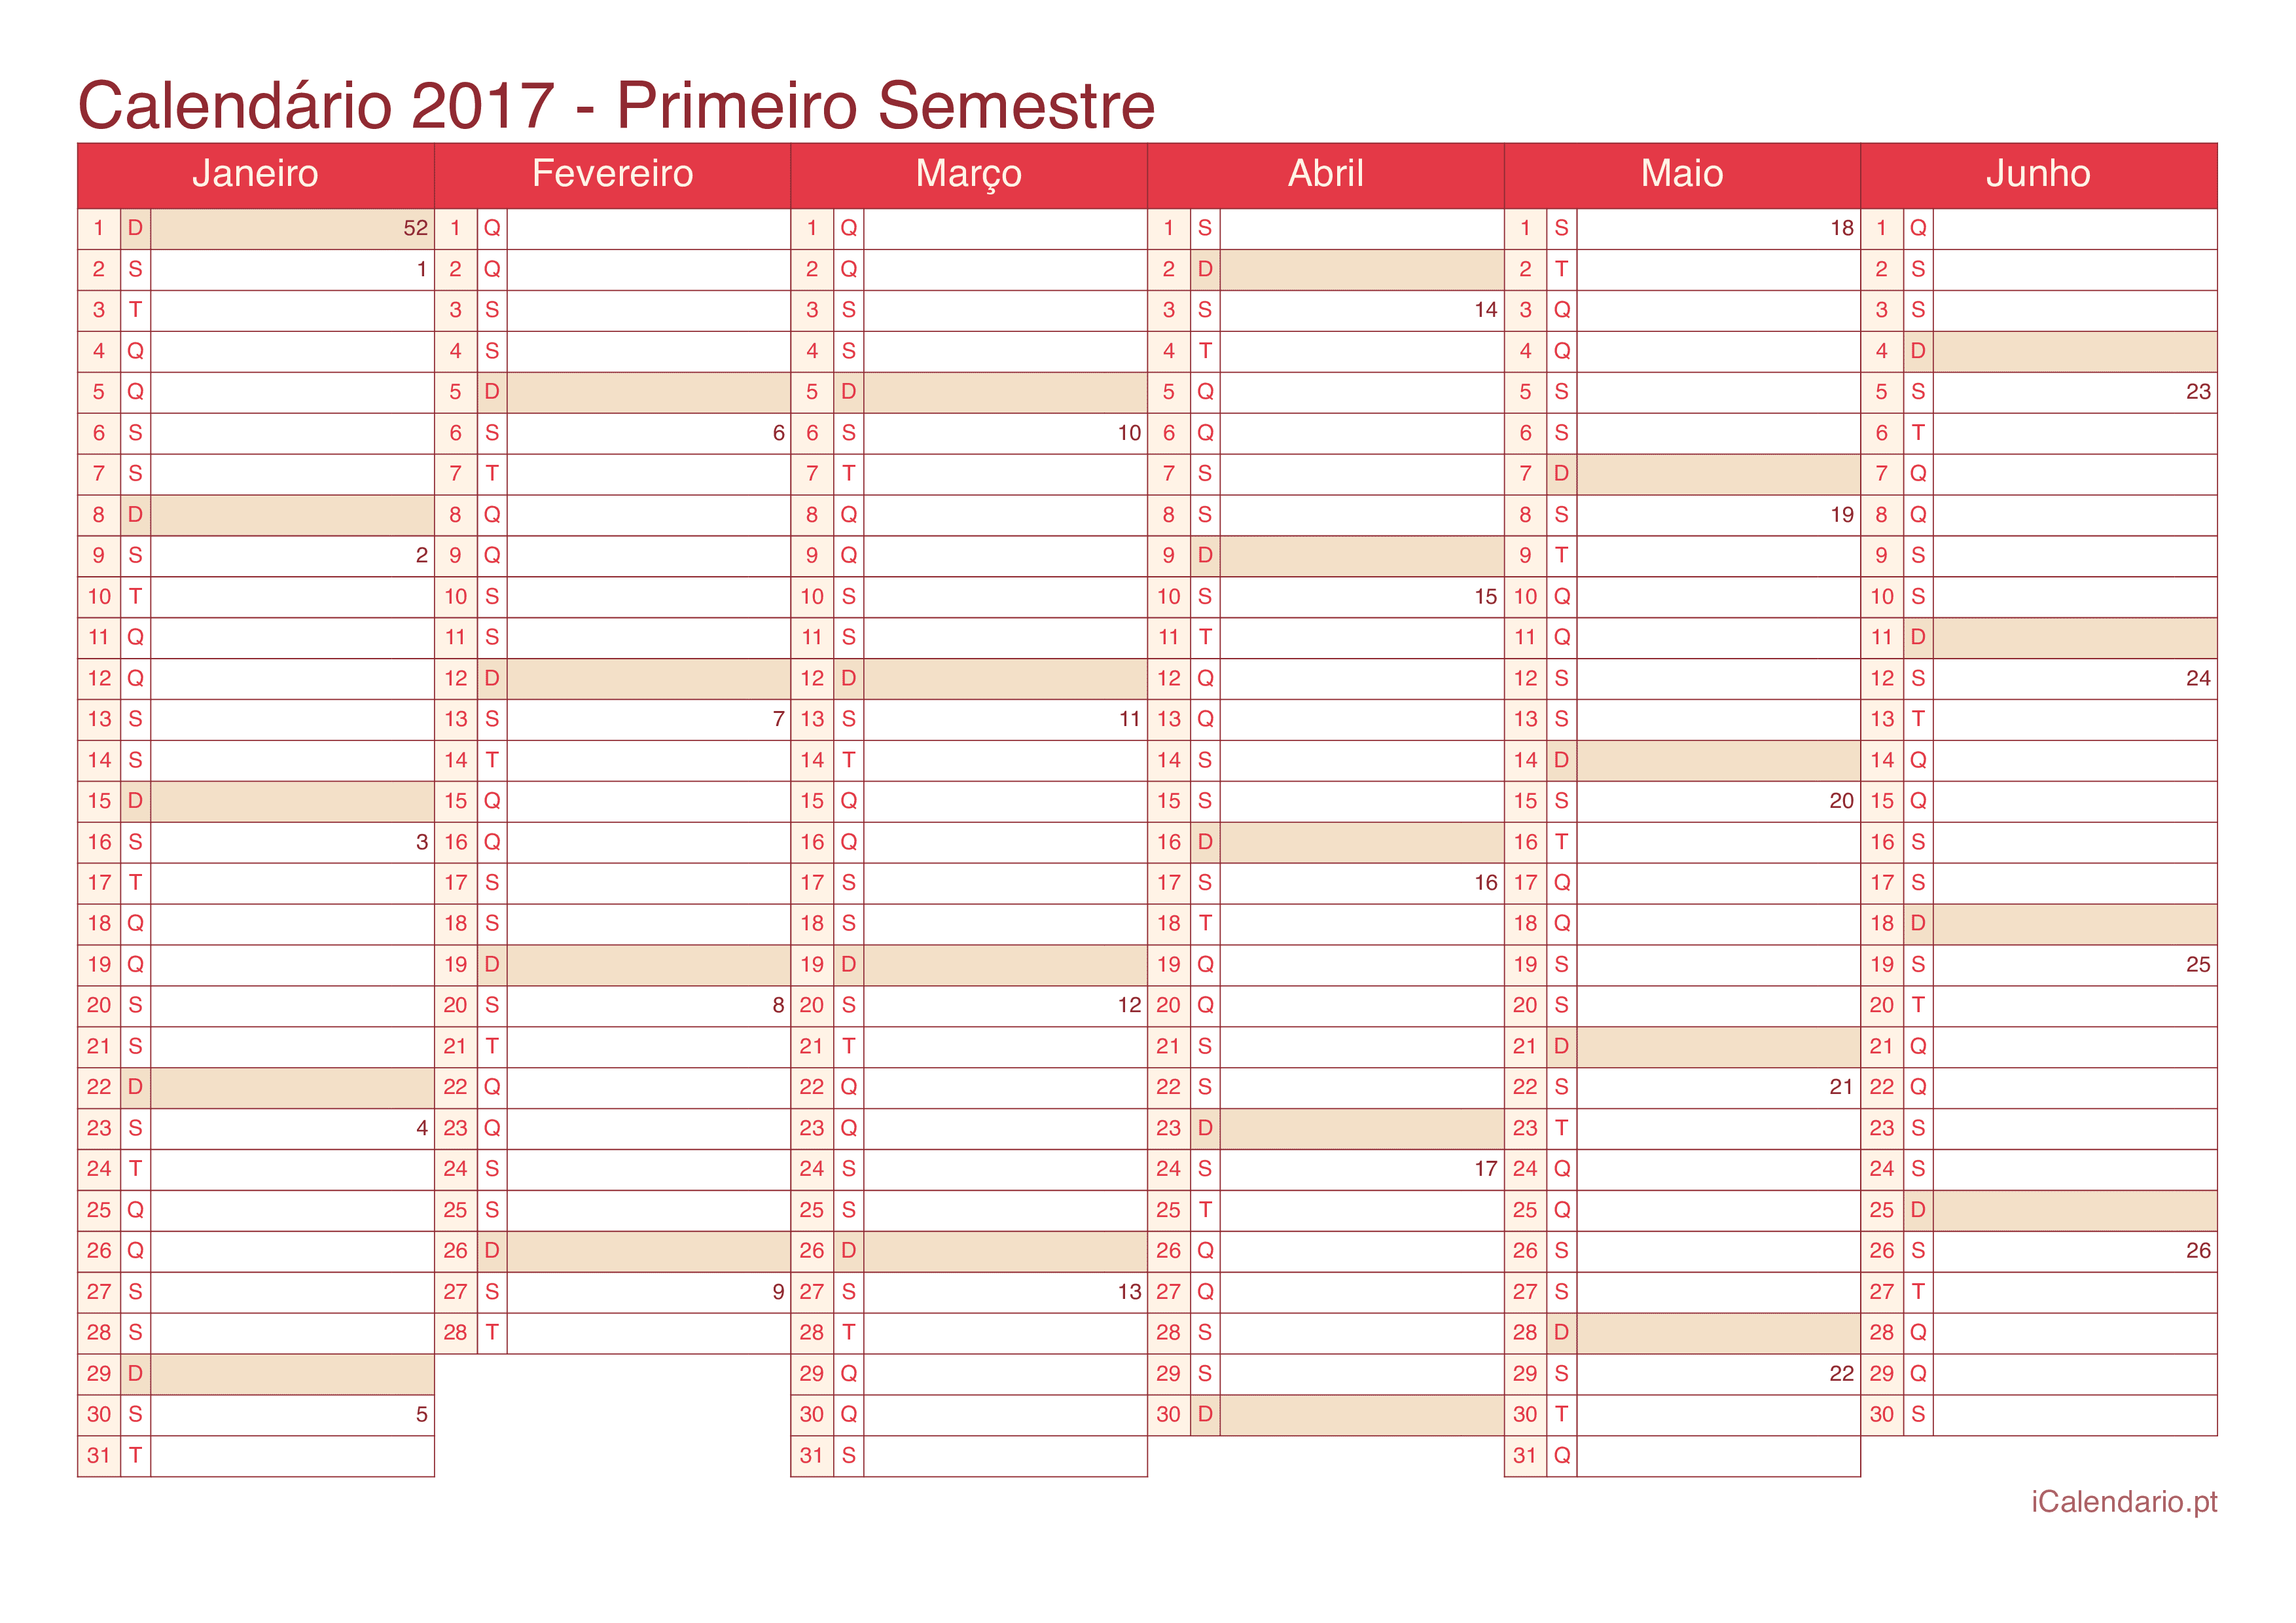 Calendário por semestre com números da semana 2017 - Cherry